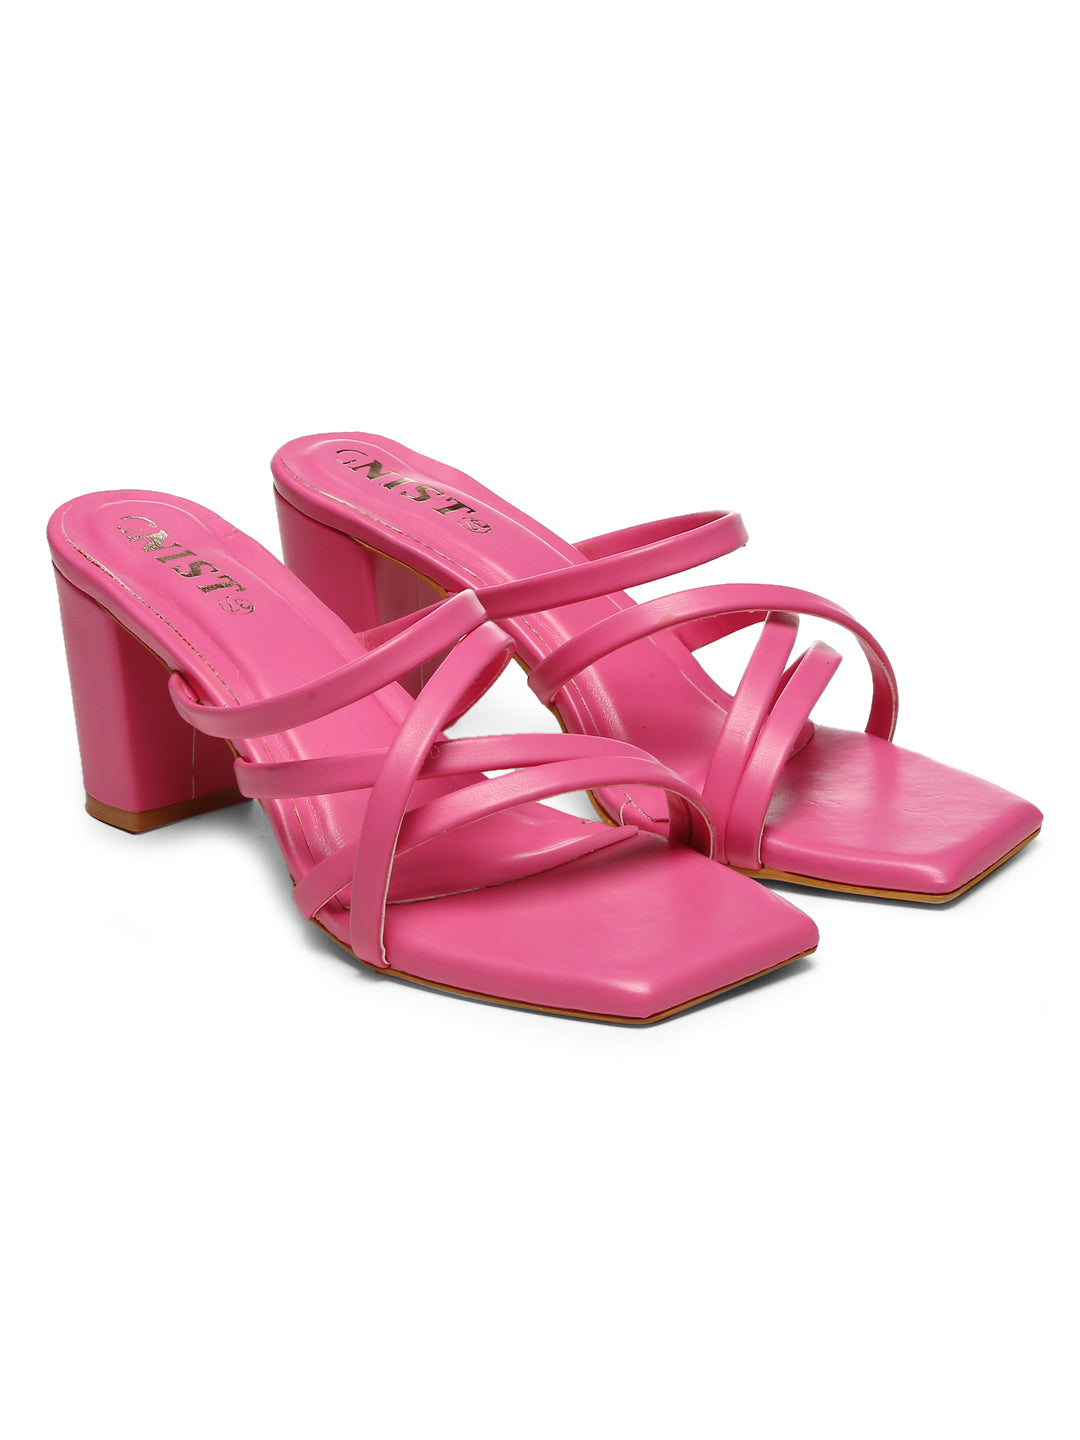 GNIST Hot Pink Strappy Block Heel